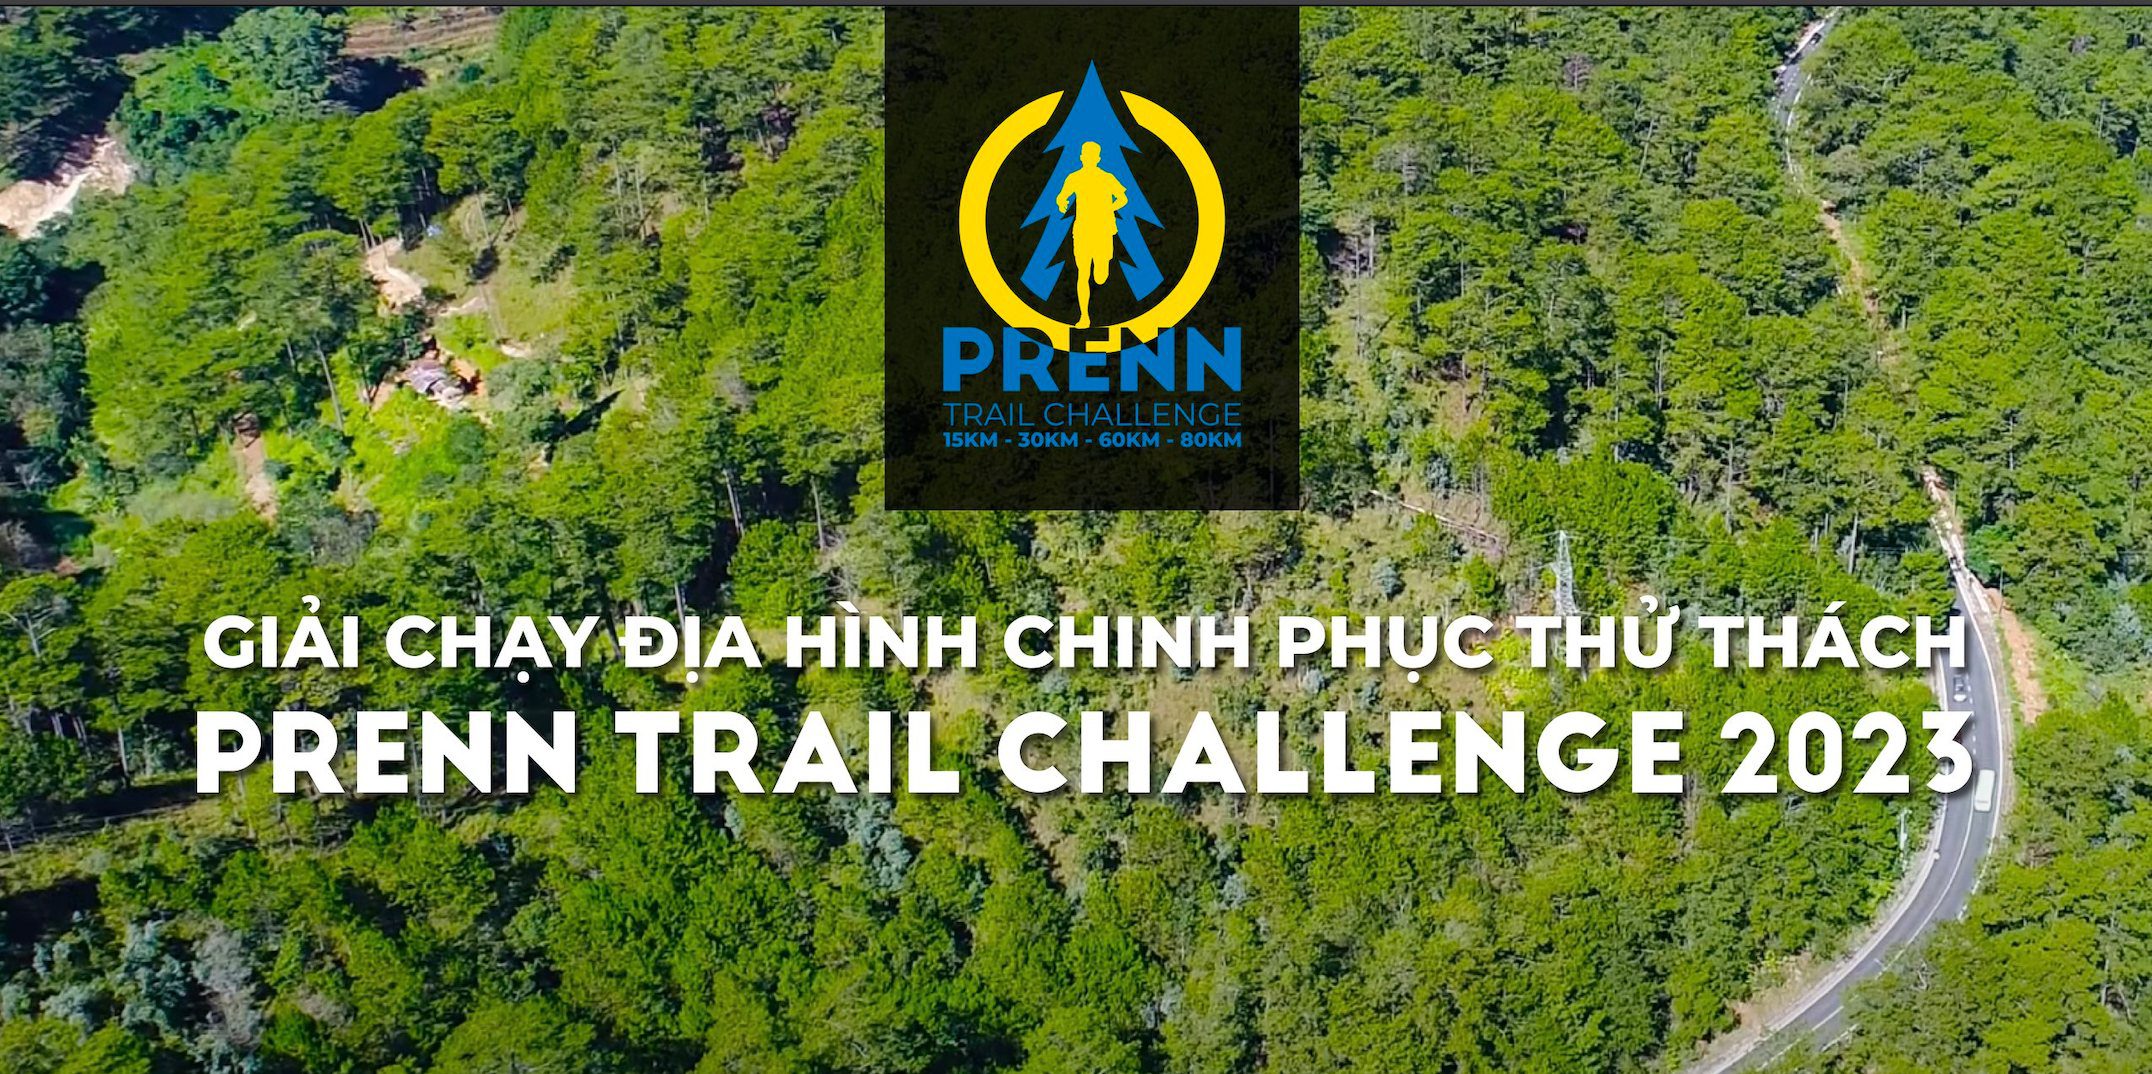 Giải chạy địa hình chinh phục thử thách Prenn Trail Challenge 2023